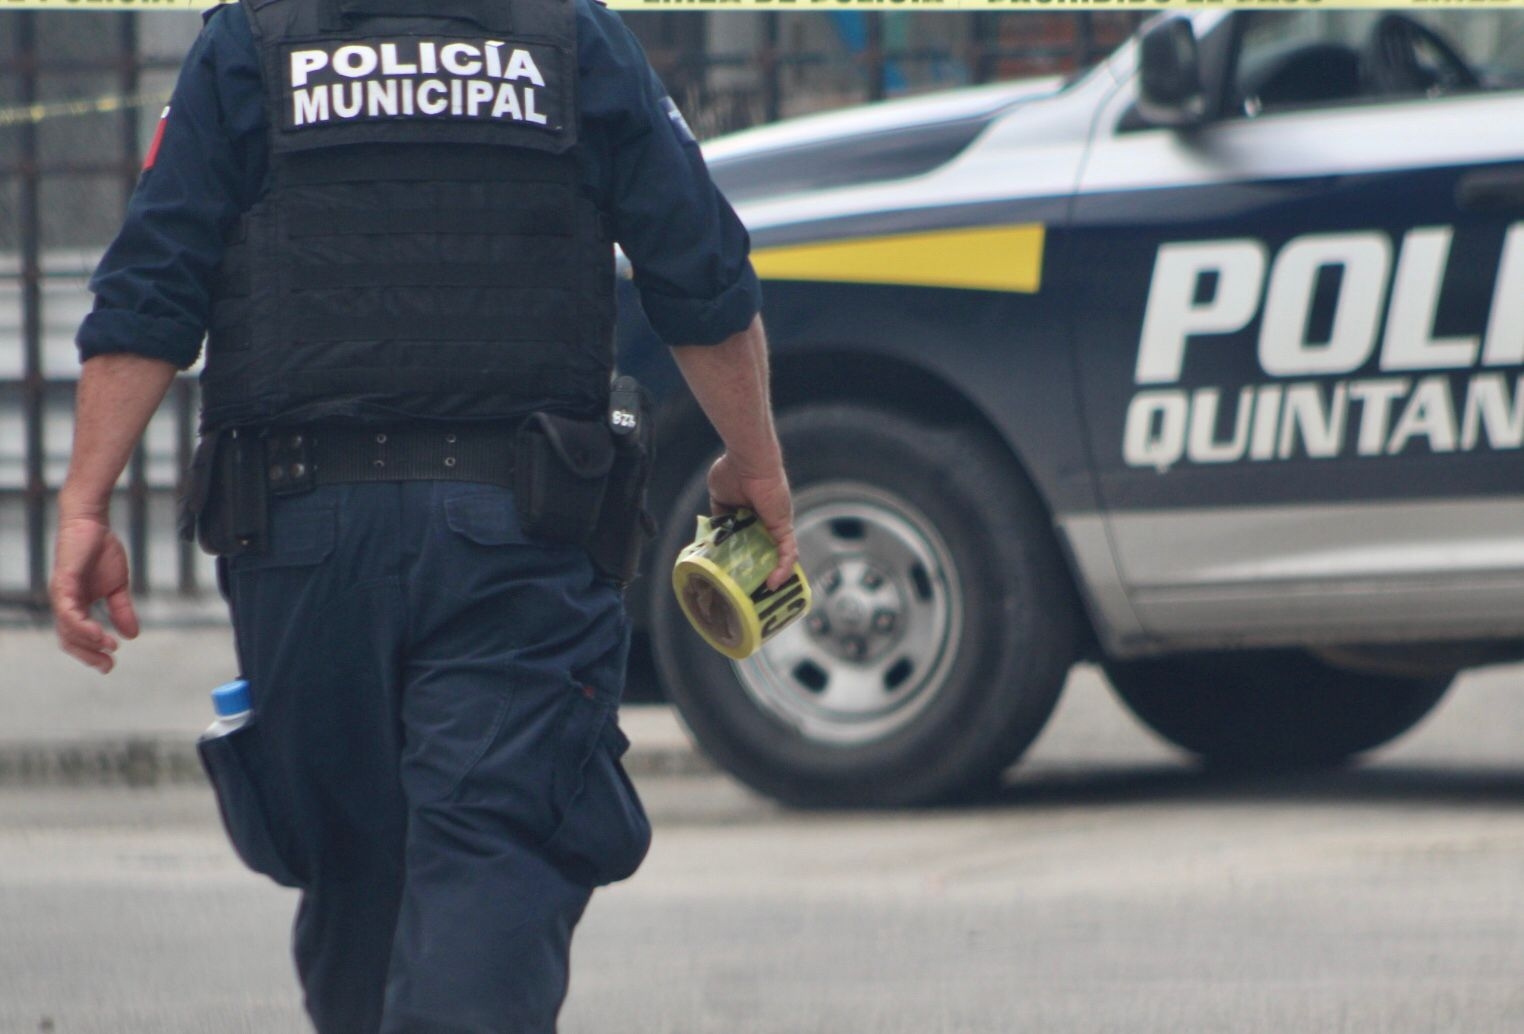 Elementos de la Policía Quintana Roo llegaron para hacerse cargo pues los civiles mantenían a los delincuentes amarrados y con lesiones